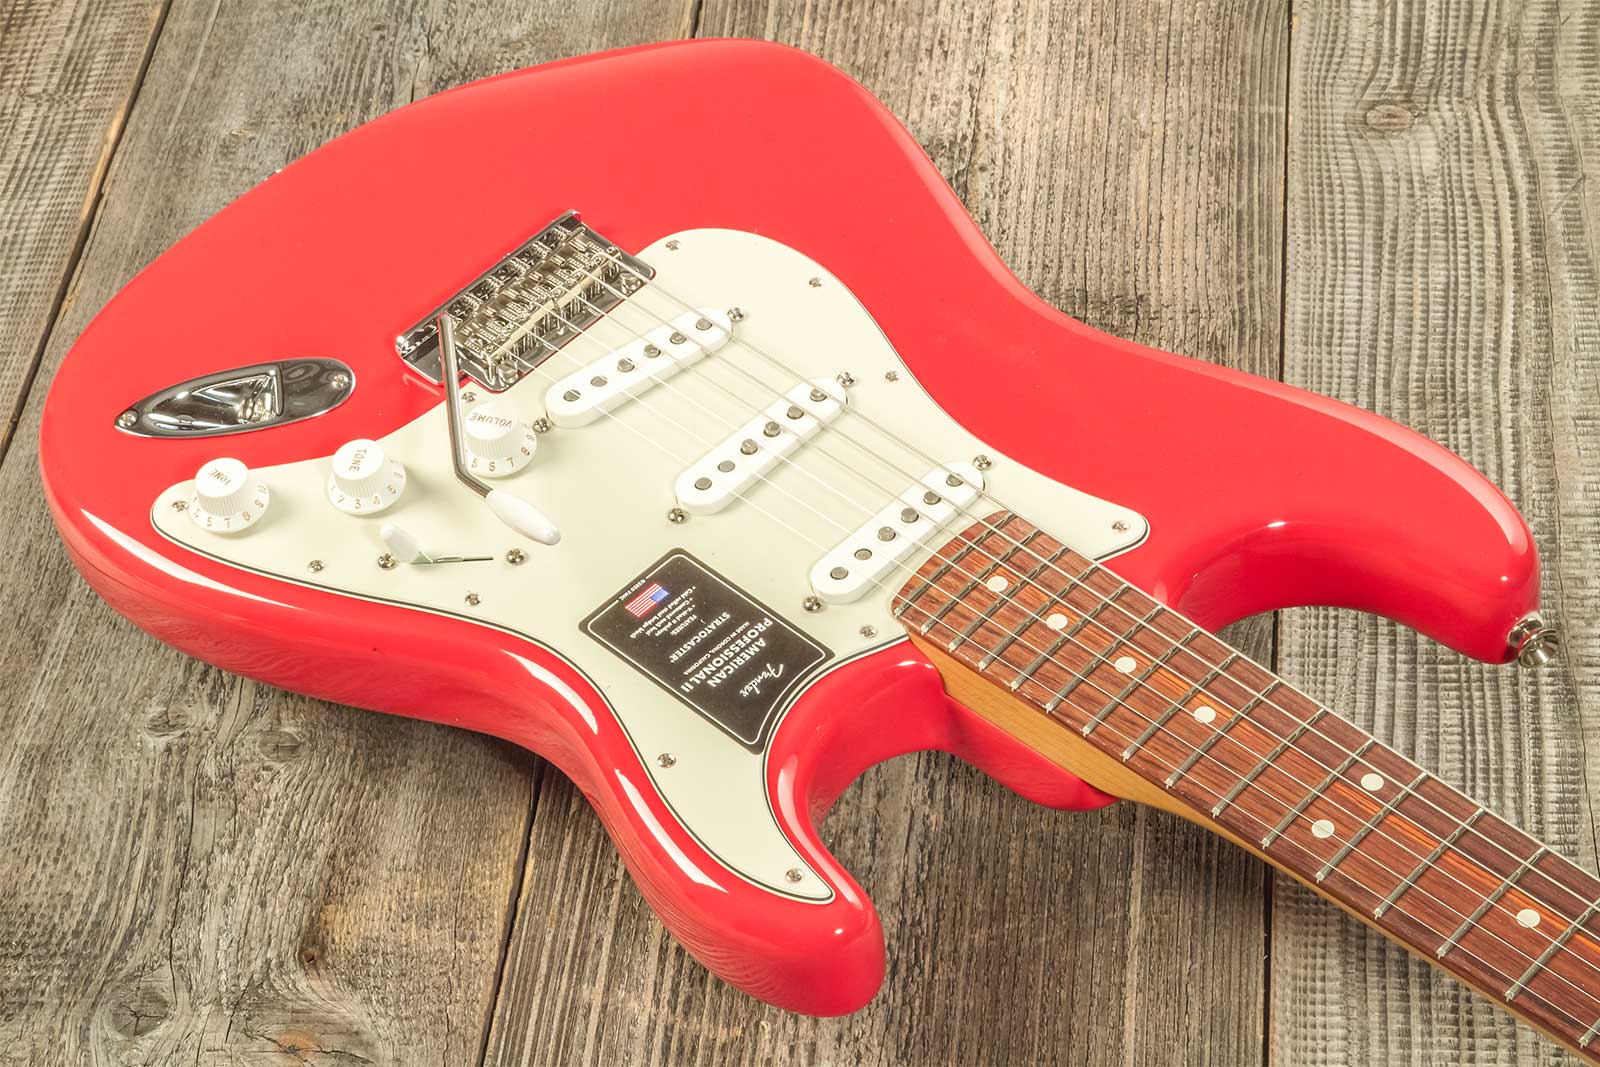 Fender Strat American Professional Ii Ltd Usa 3s Trem Rw - Fiesta Red - Elektrische gitaar in Str-vorm - Variation 5